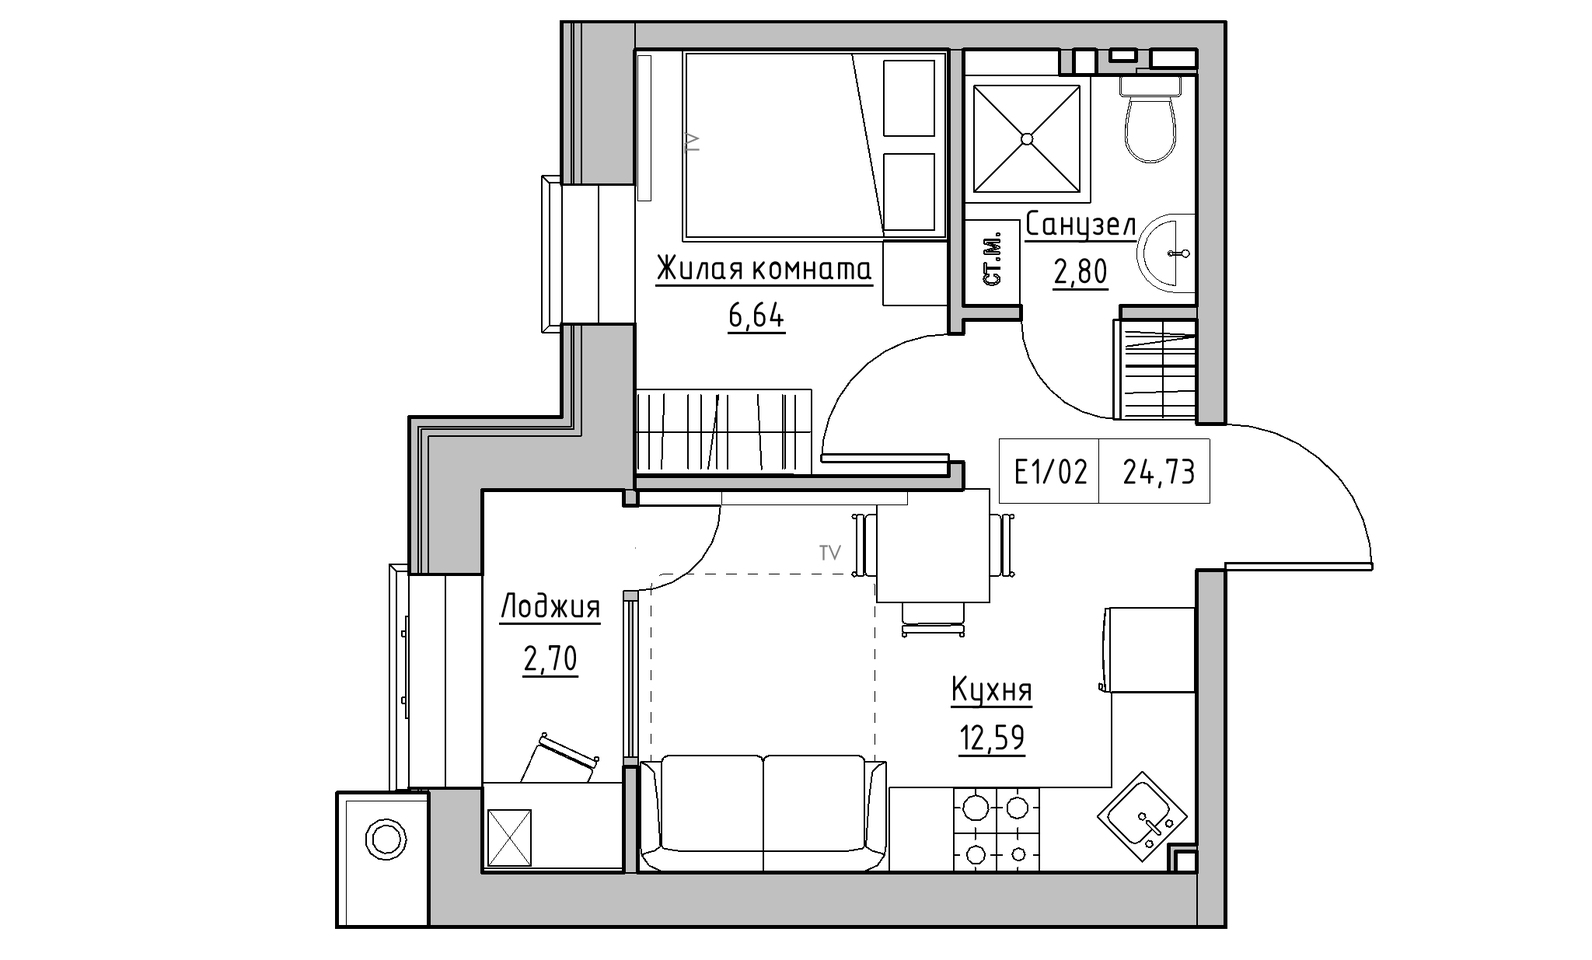 Планування 1-к квартира площею 24.73м2, KS-014-02/0013.